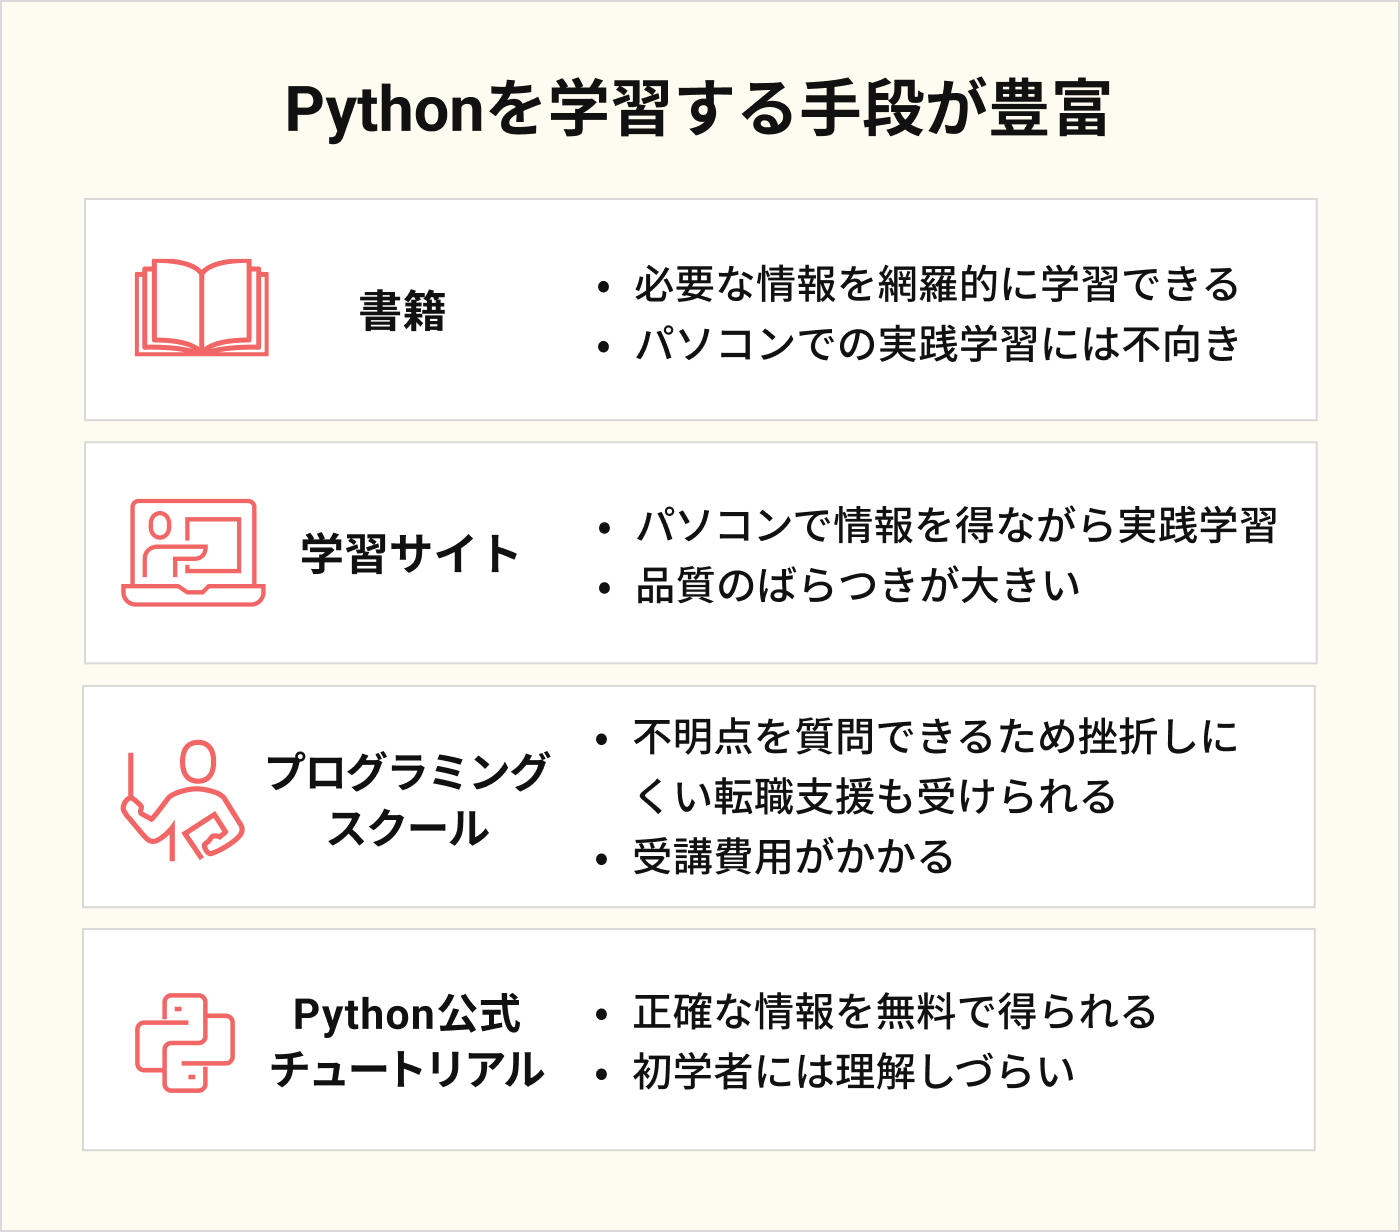 Pythonを学習する手段が豊富